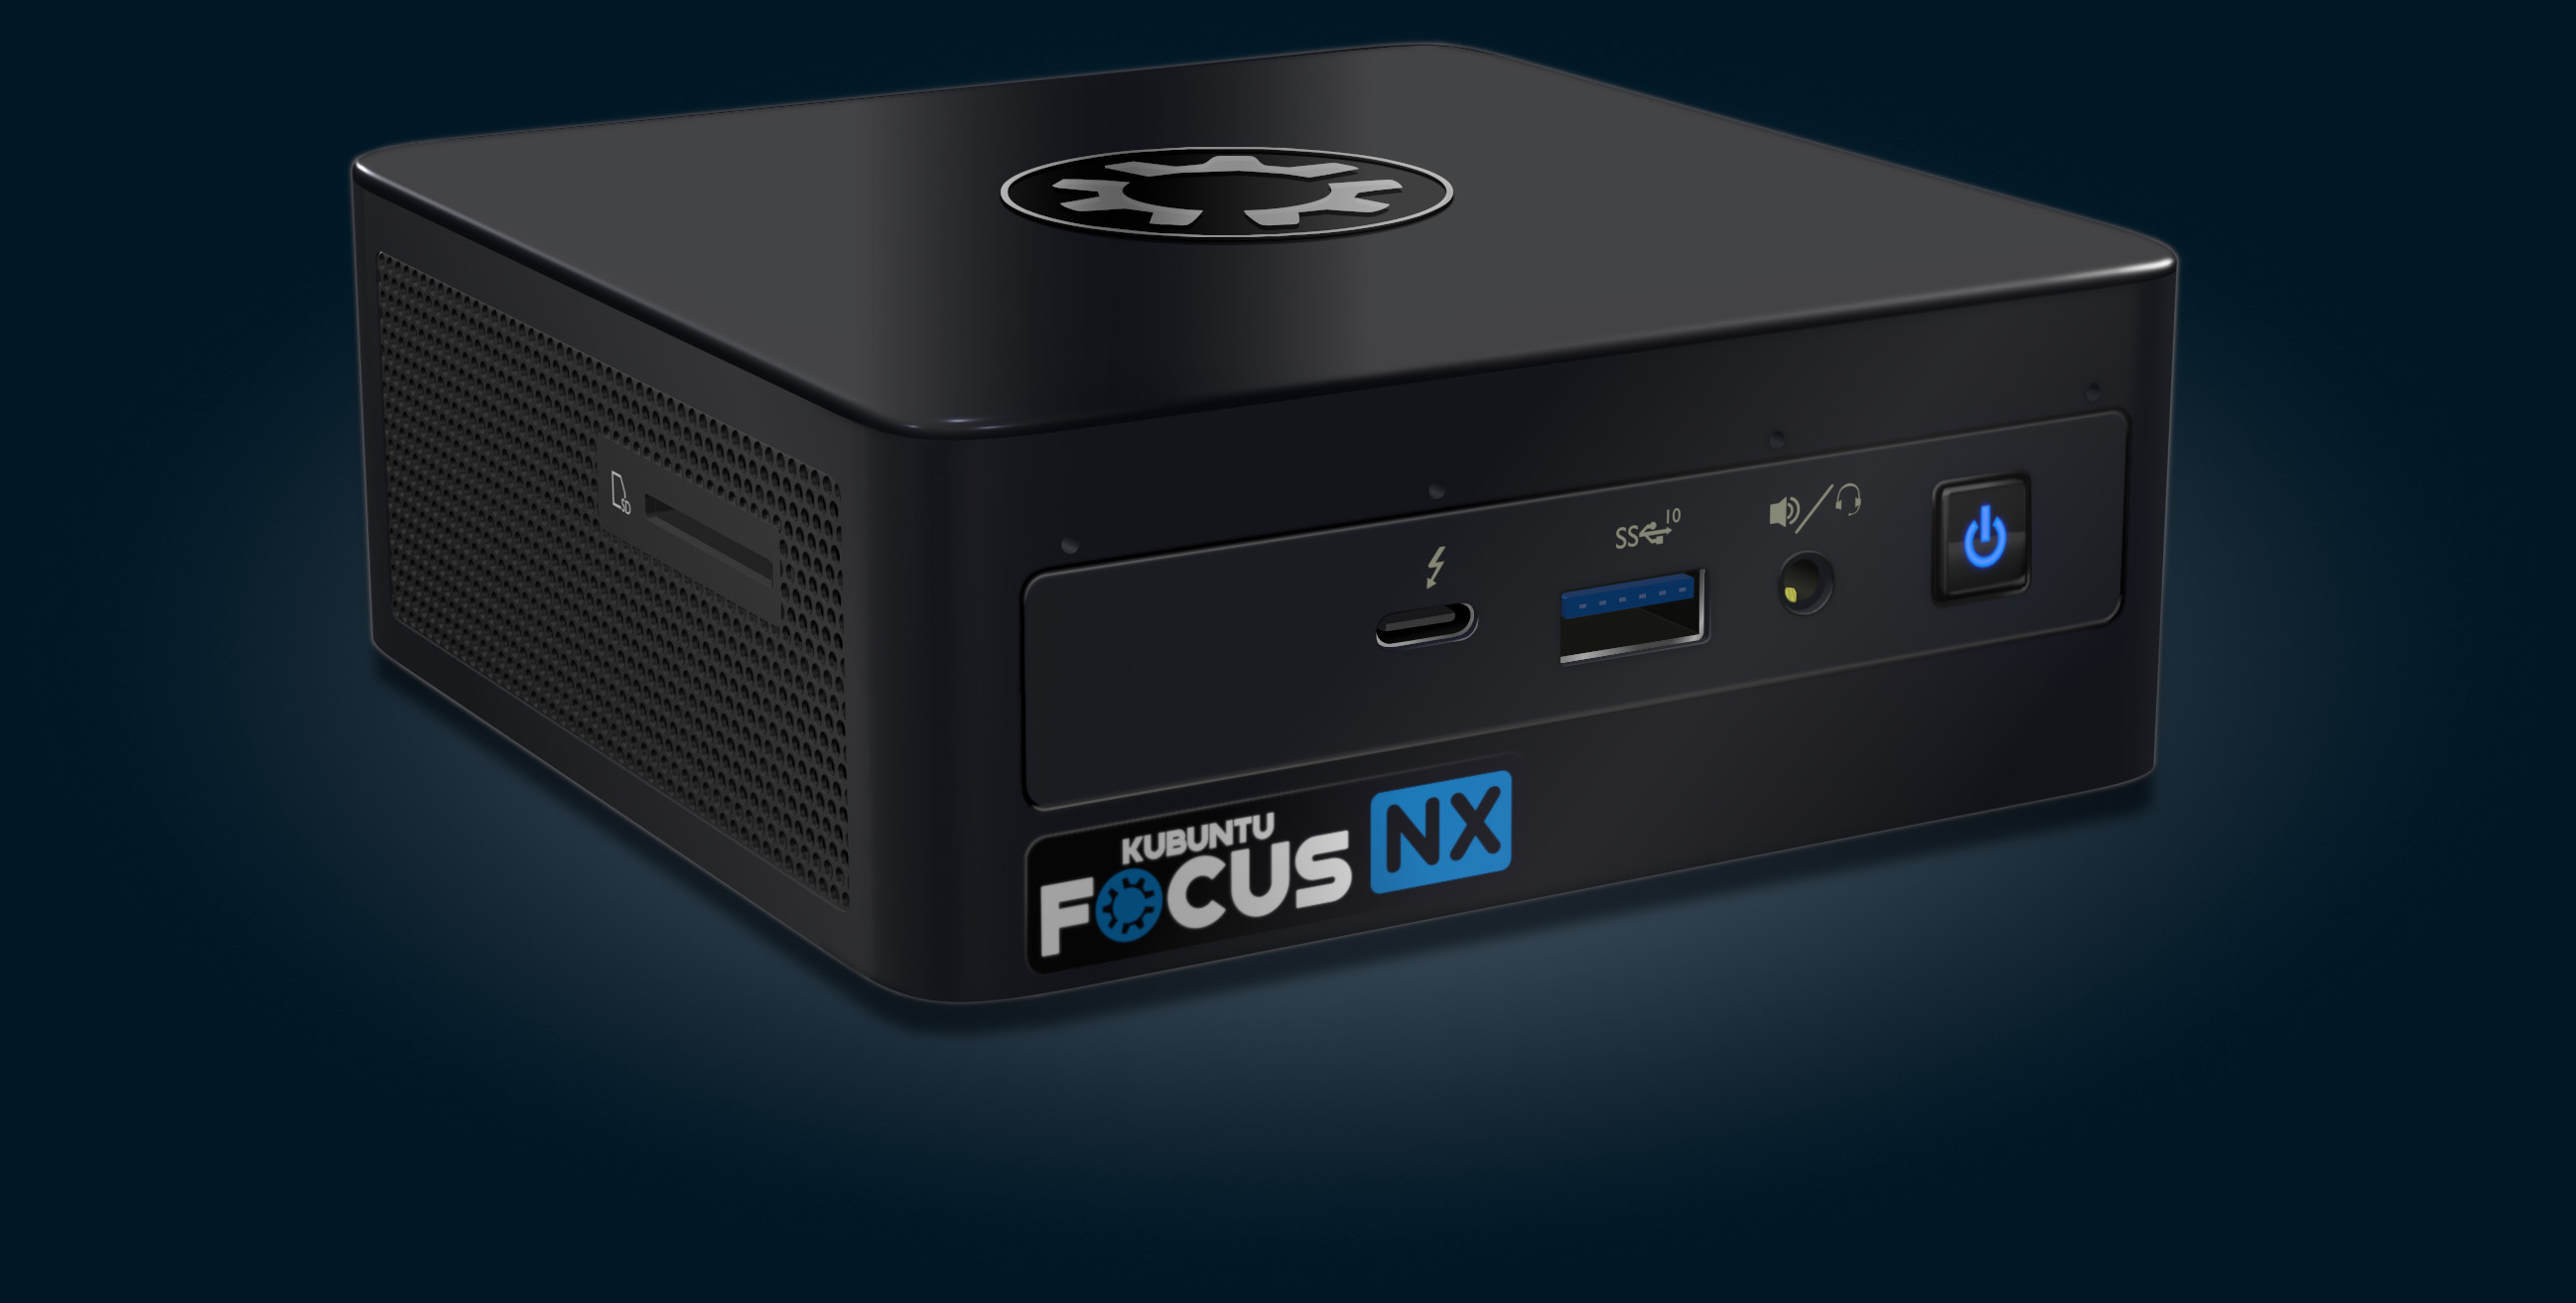 Kubuntu Focus NX GEN 1